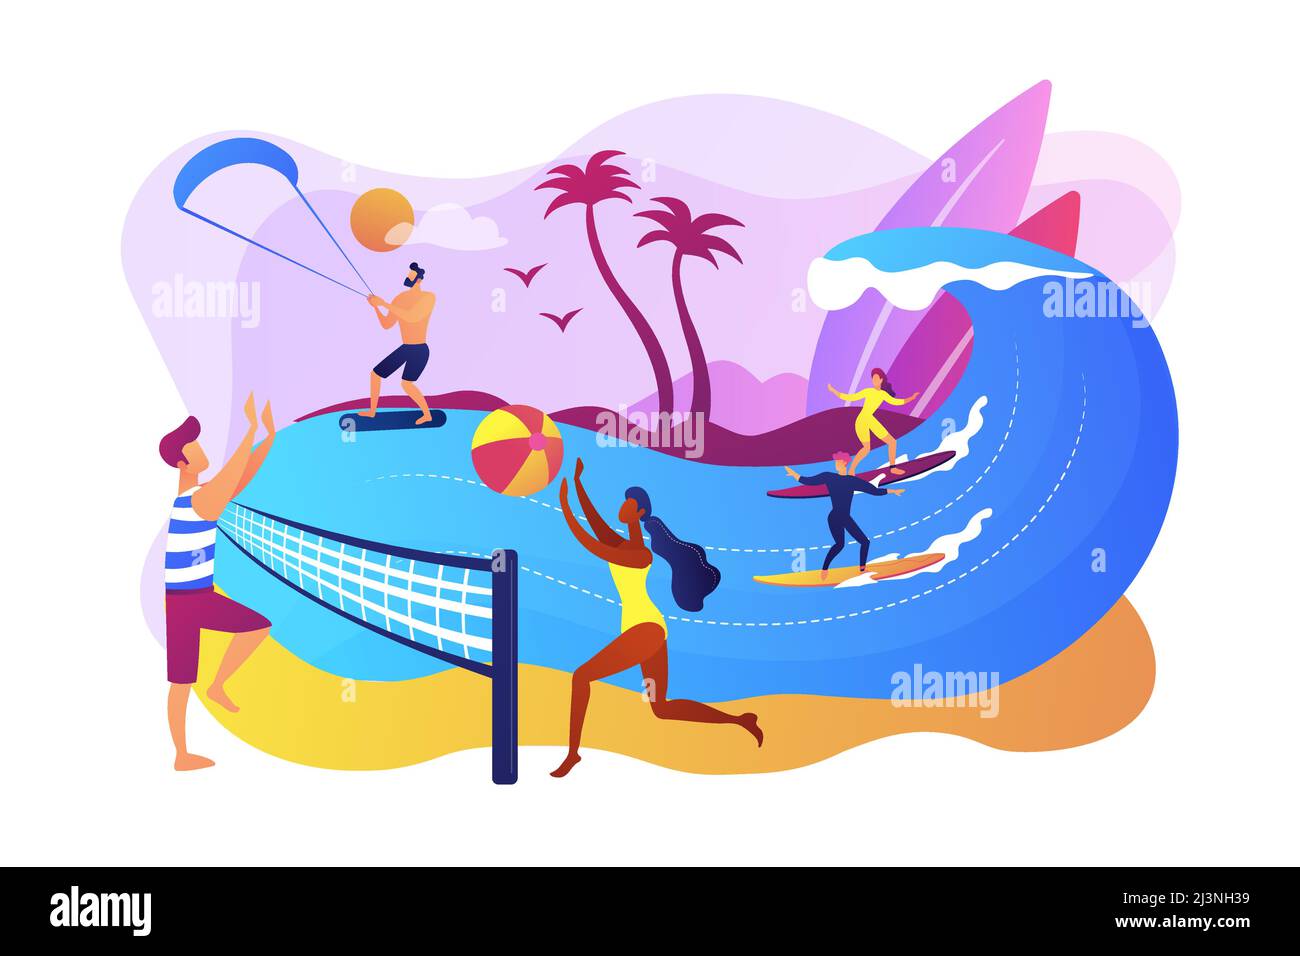 Les adultes qui jouent au volley, au surf et au kitesurf sont minuscules. Activités d'été sur la plage, divertissements en bord de mer, services d'animation en mer. Baugh Illustration de Vecteur